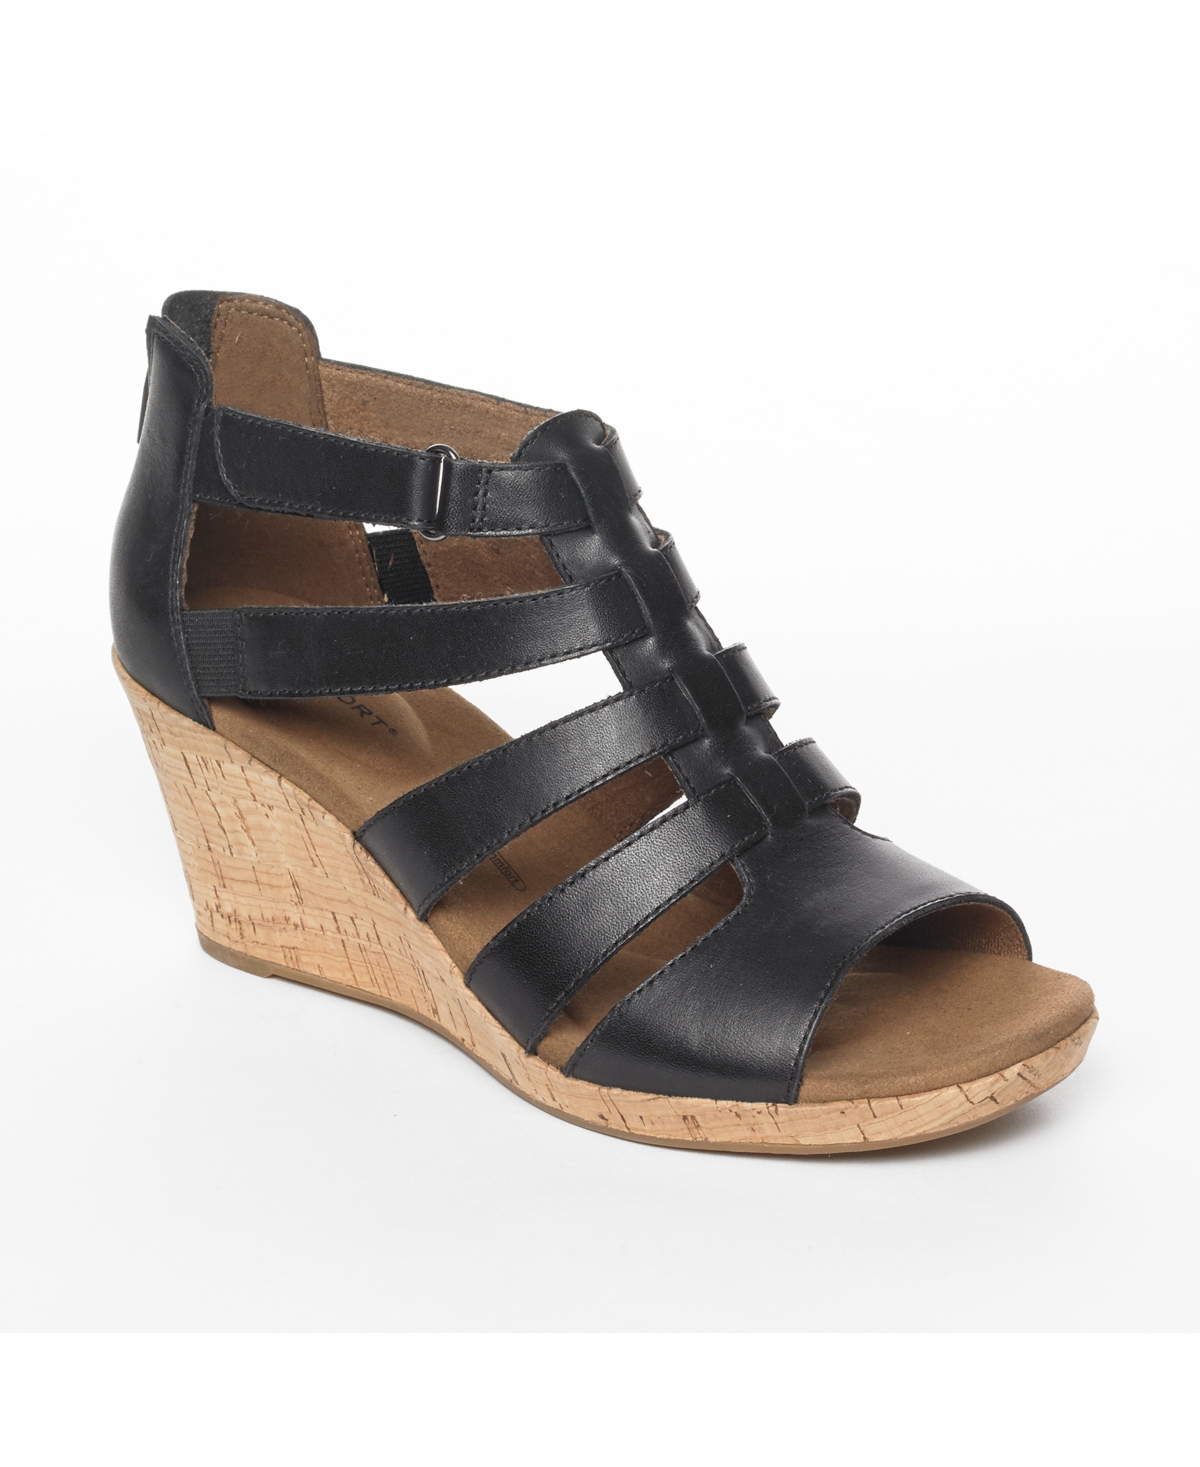 Women's Briah Gladiator Wedge Sandals - New Taupe Nubuck